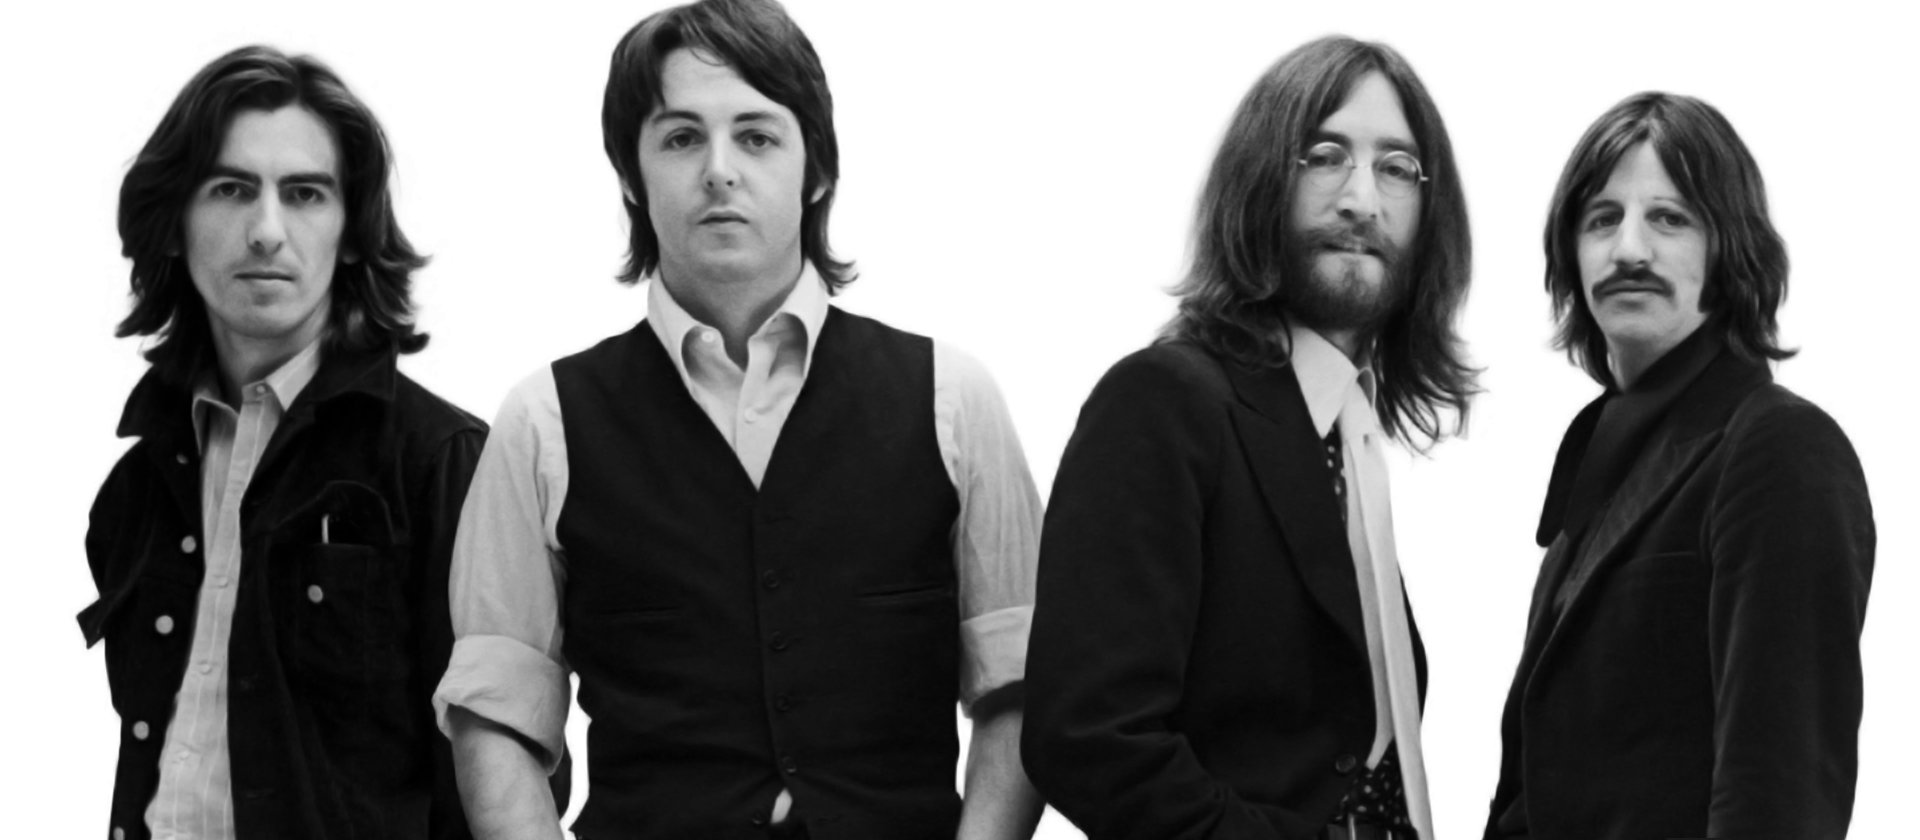 Beatles'ın kurucusu Paul McCartney 45 yıl önce öldü mü?